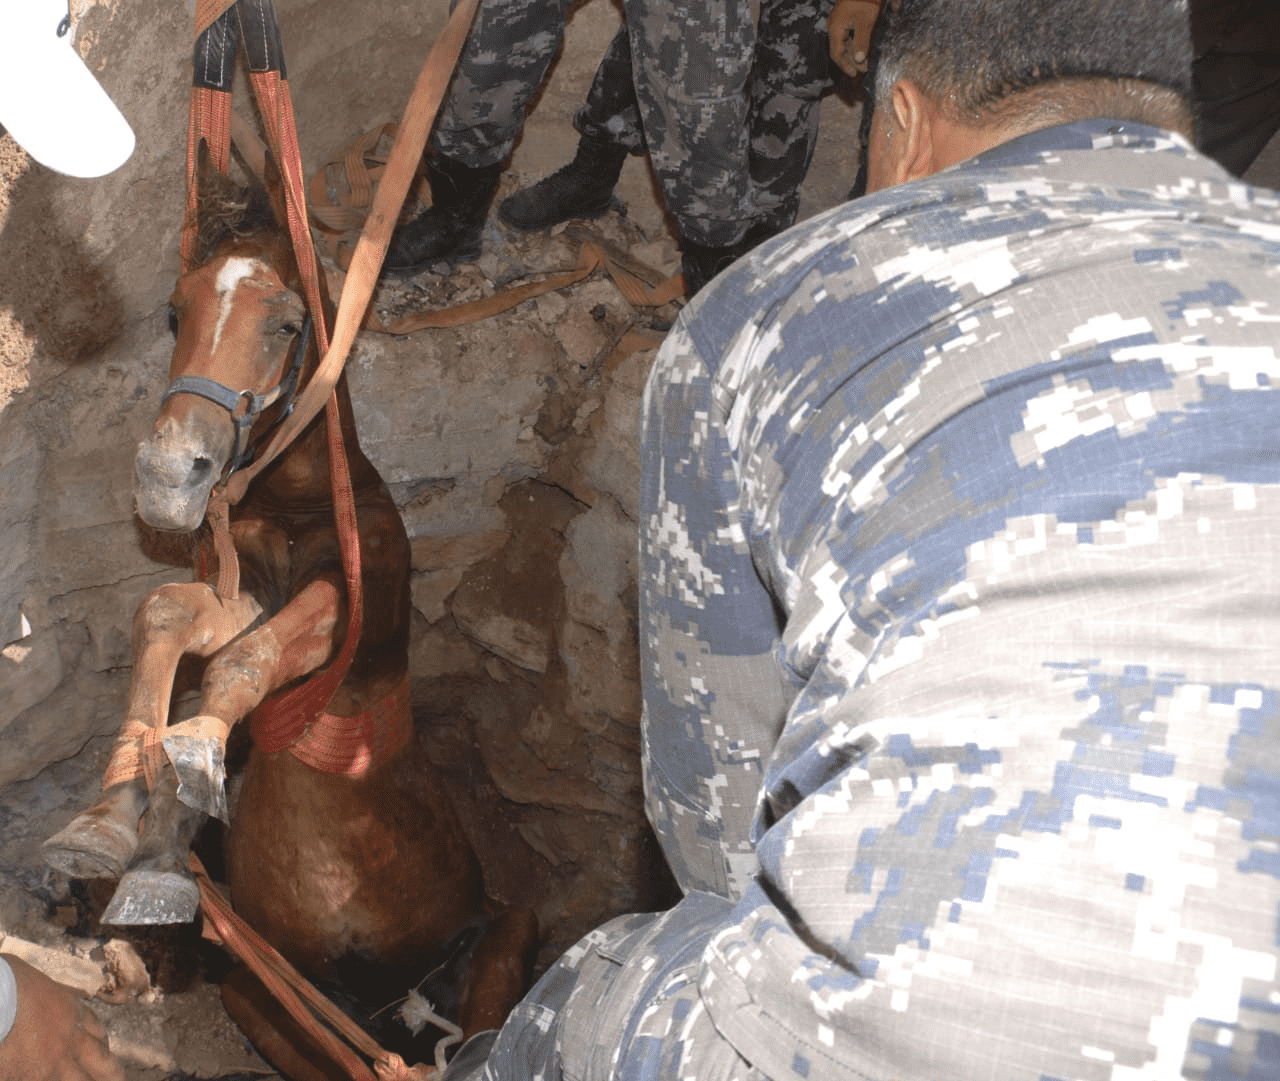 أعمال  إنقاذ حصان سقط داخل حفرة يقدر عمقها بمترين في منطقة المغير في إربد. (مديرية الدفاع المدني)